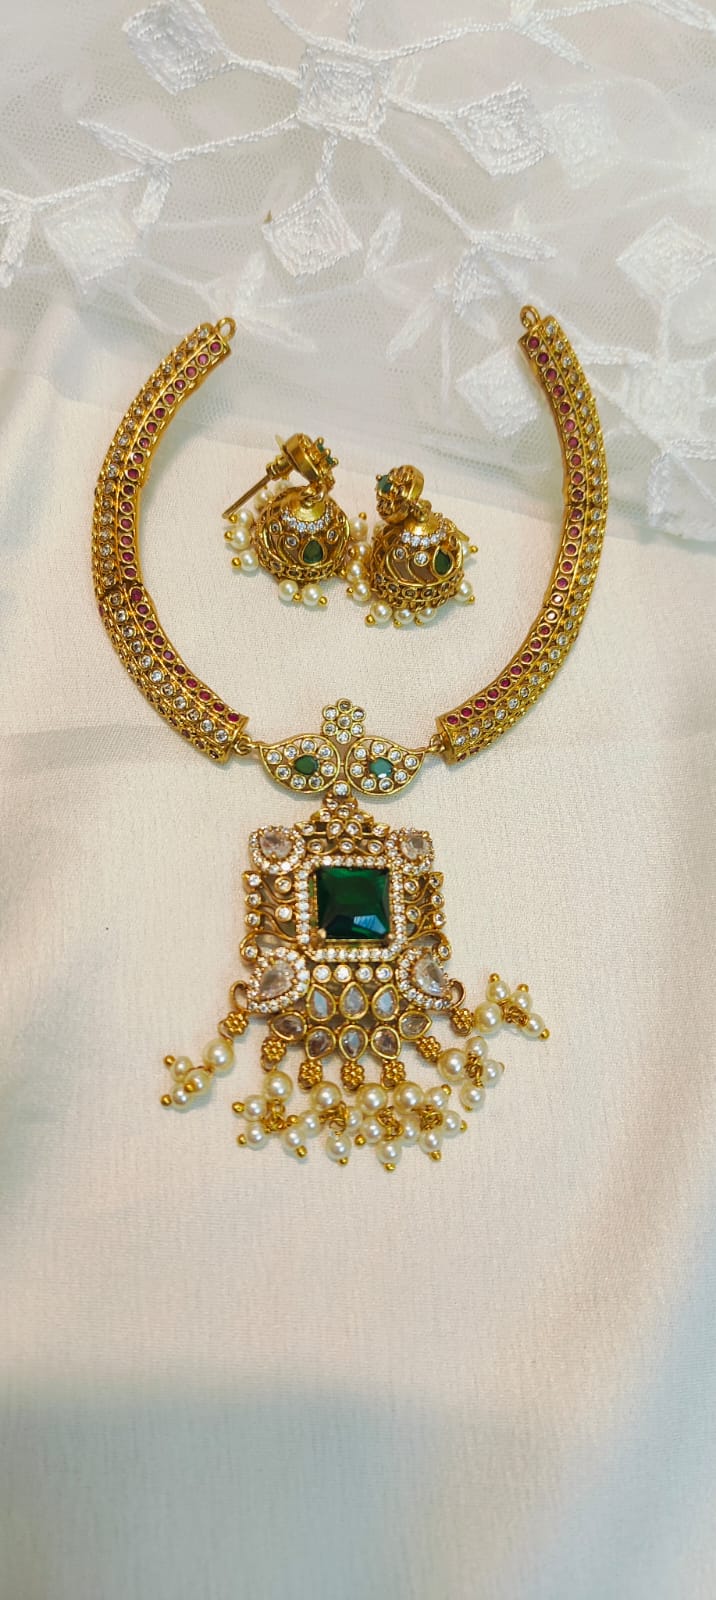 Divine Cz stone necklace set